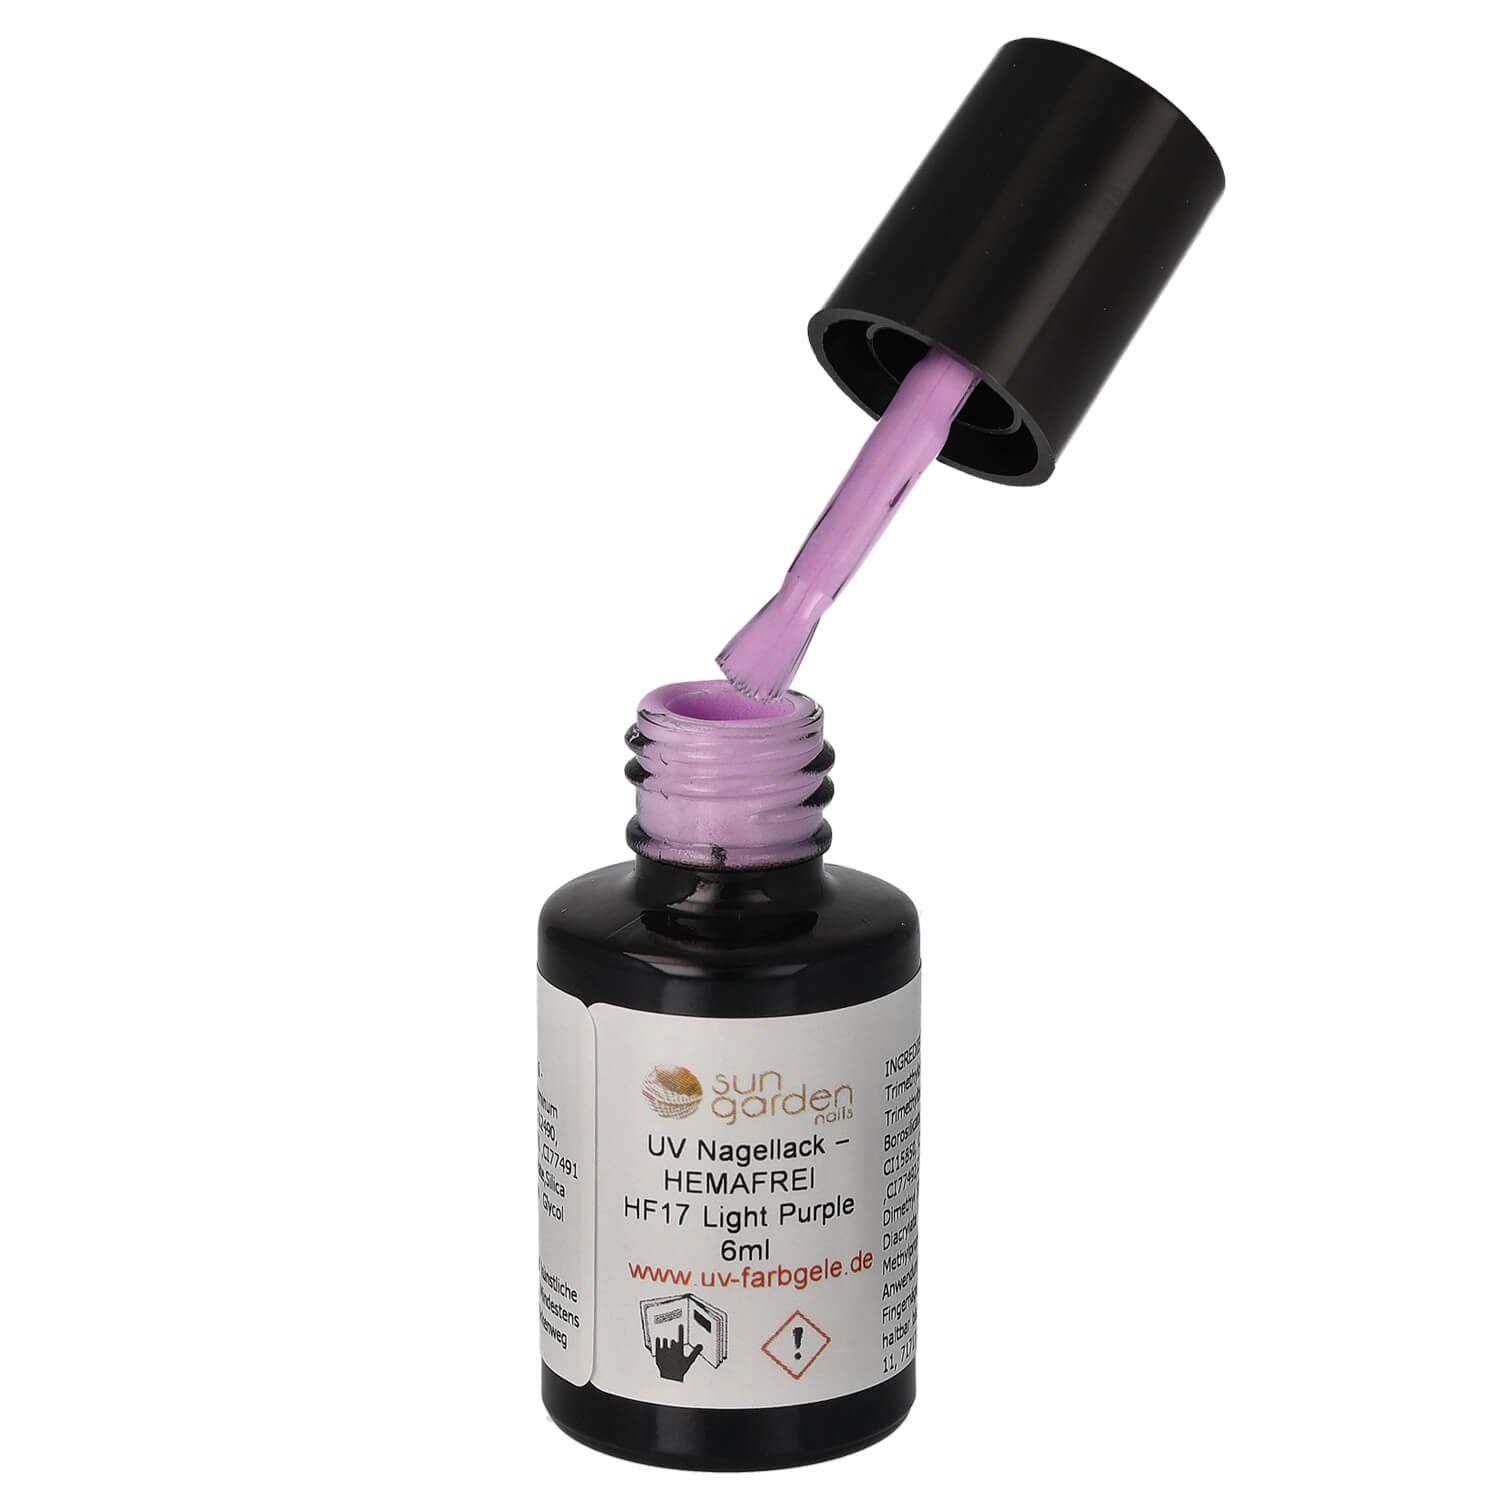 Sun – Purple UV HEMAFREI Nagellack Light Nagellack HF17 - 6ml Garden Nails